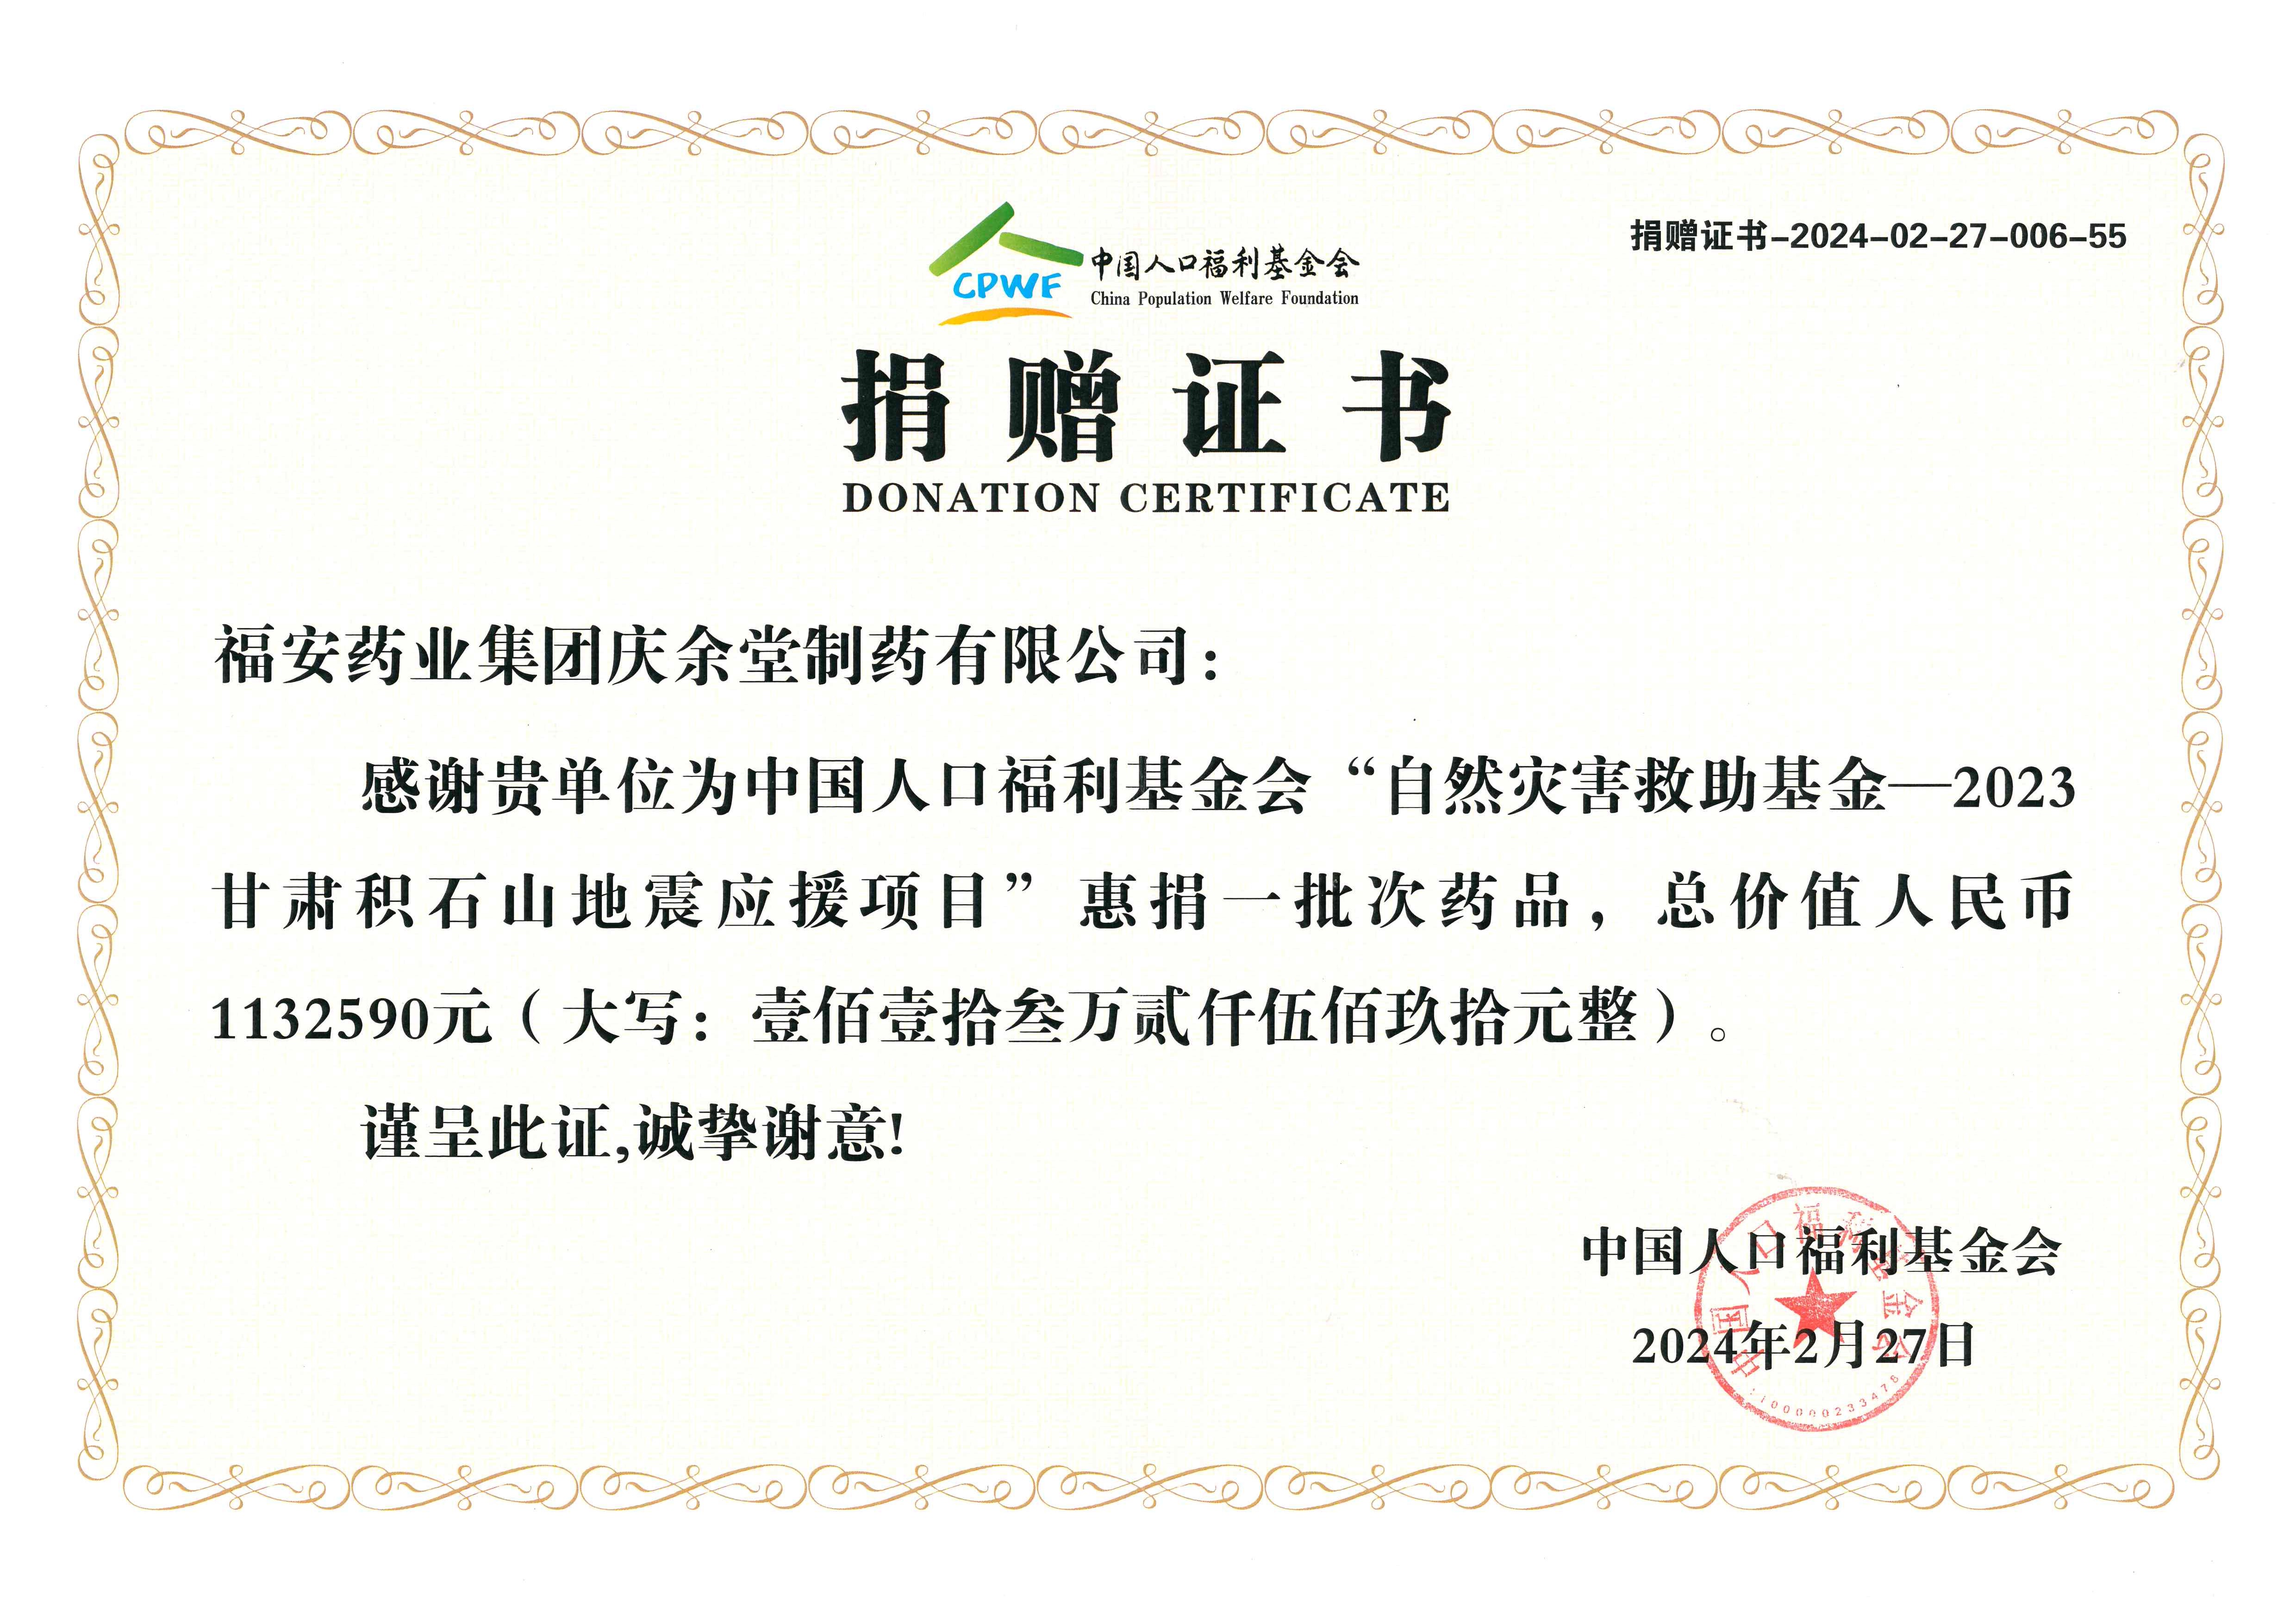 中國人口福利基金慶余堂捐贈證書